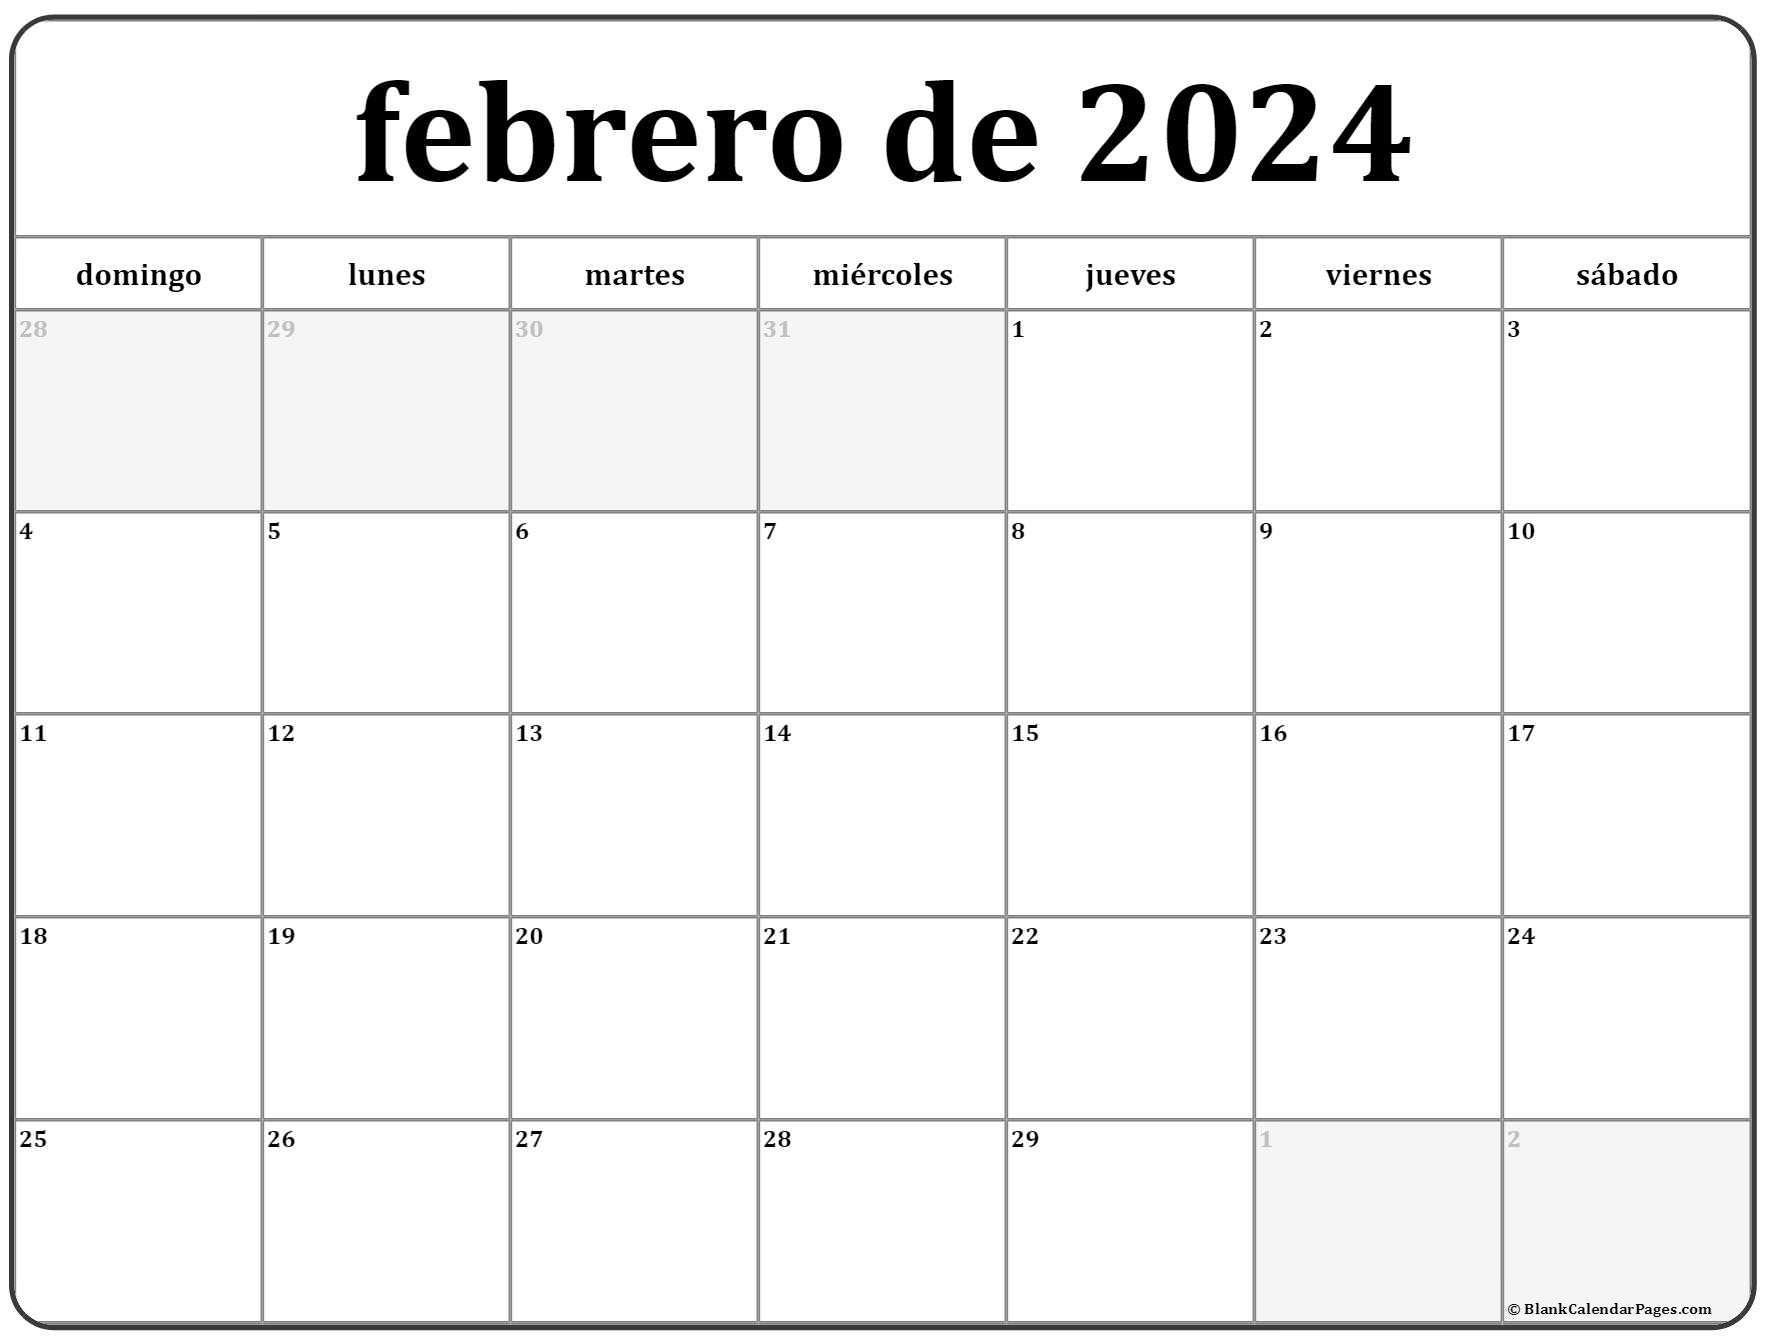 febrero de 2024 calendario gratis Calendario febrero